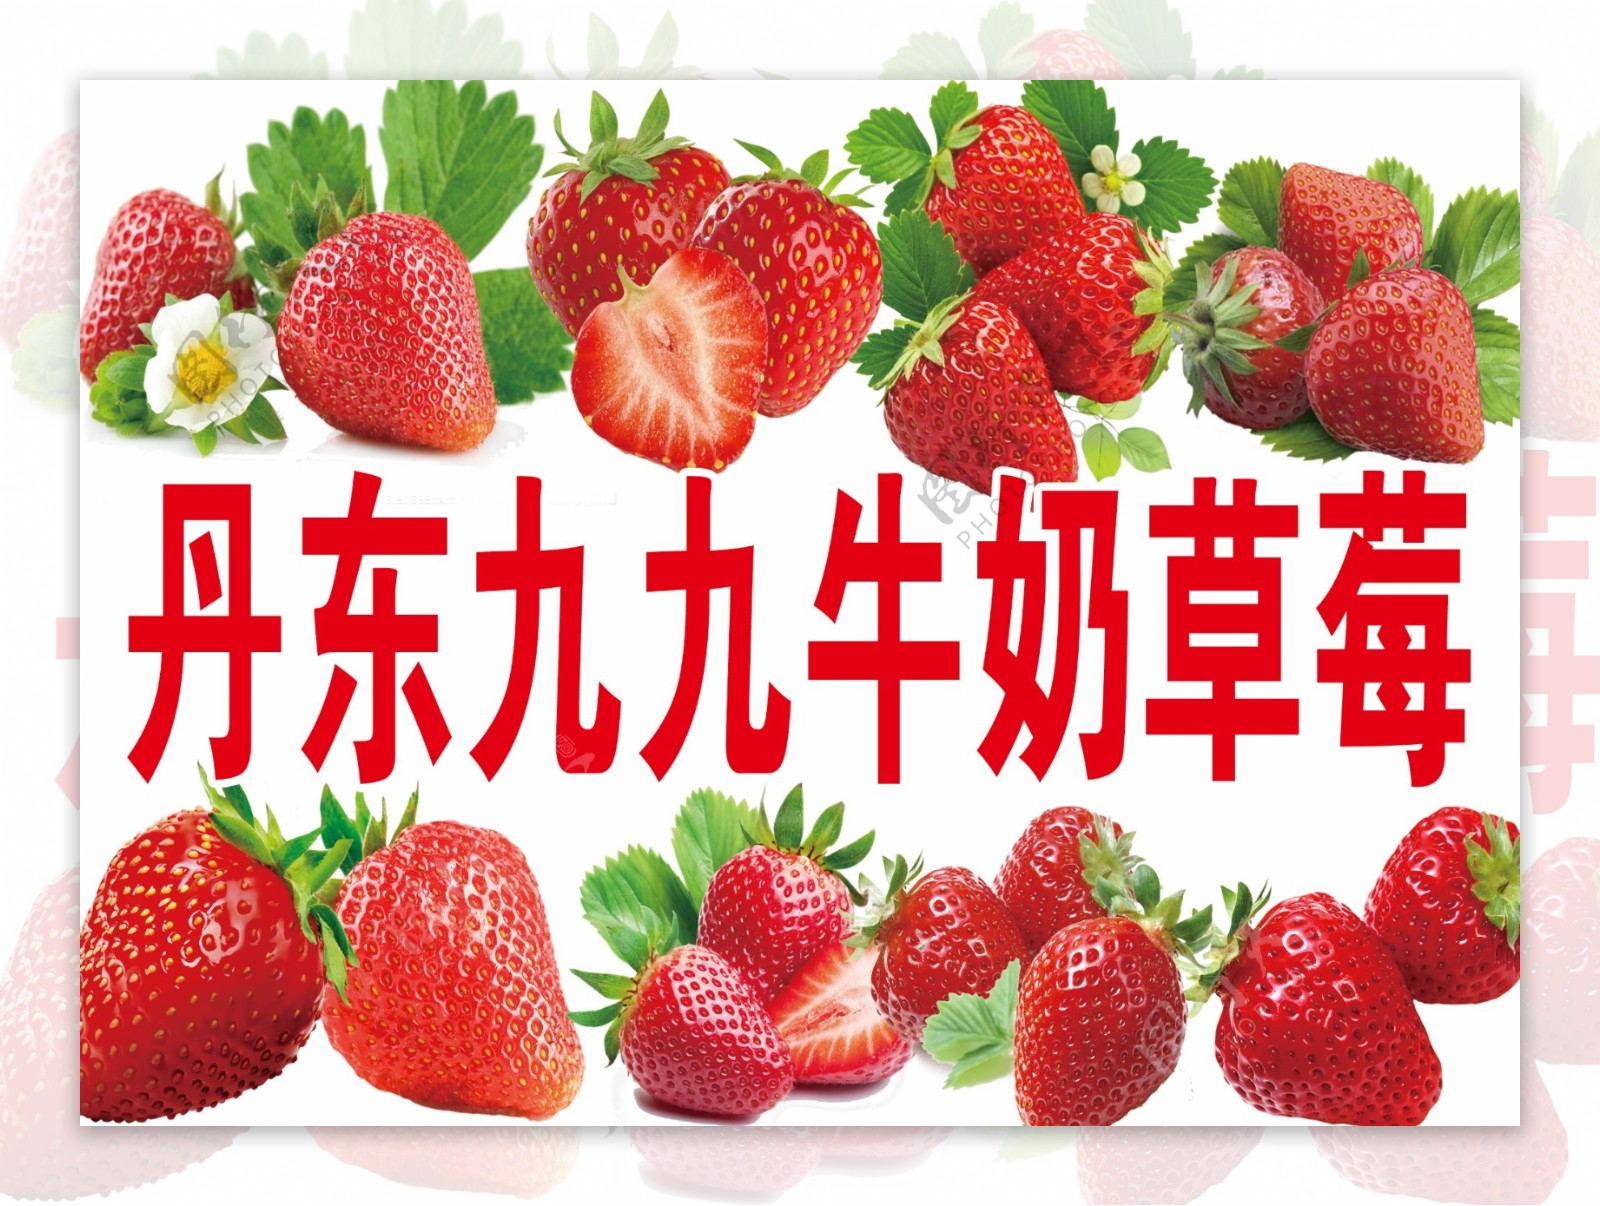 草莓食品背景夏天